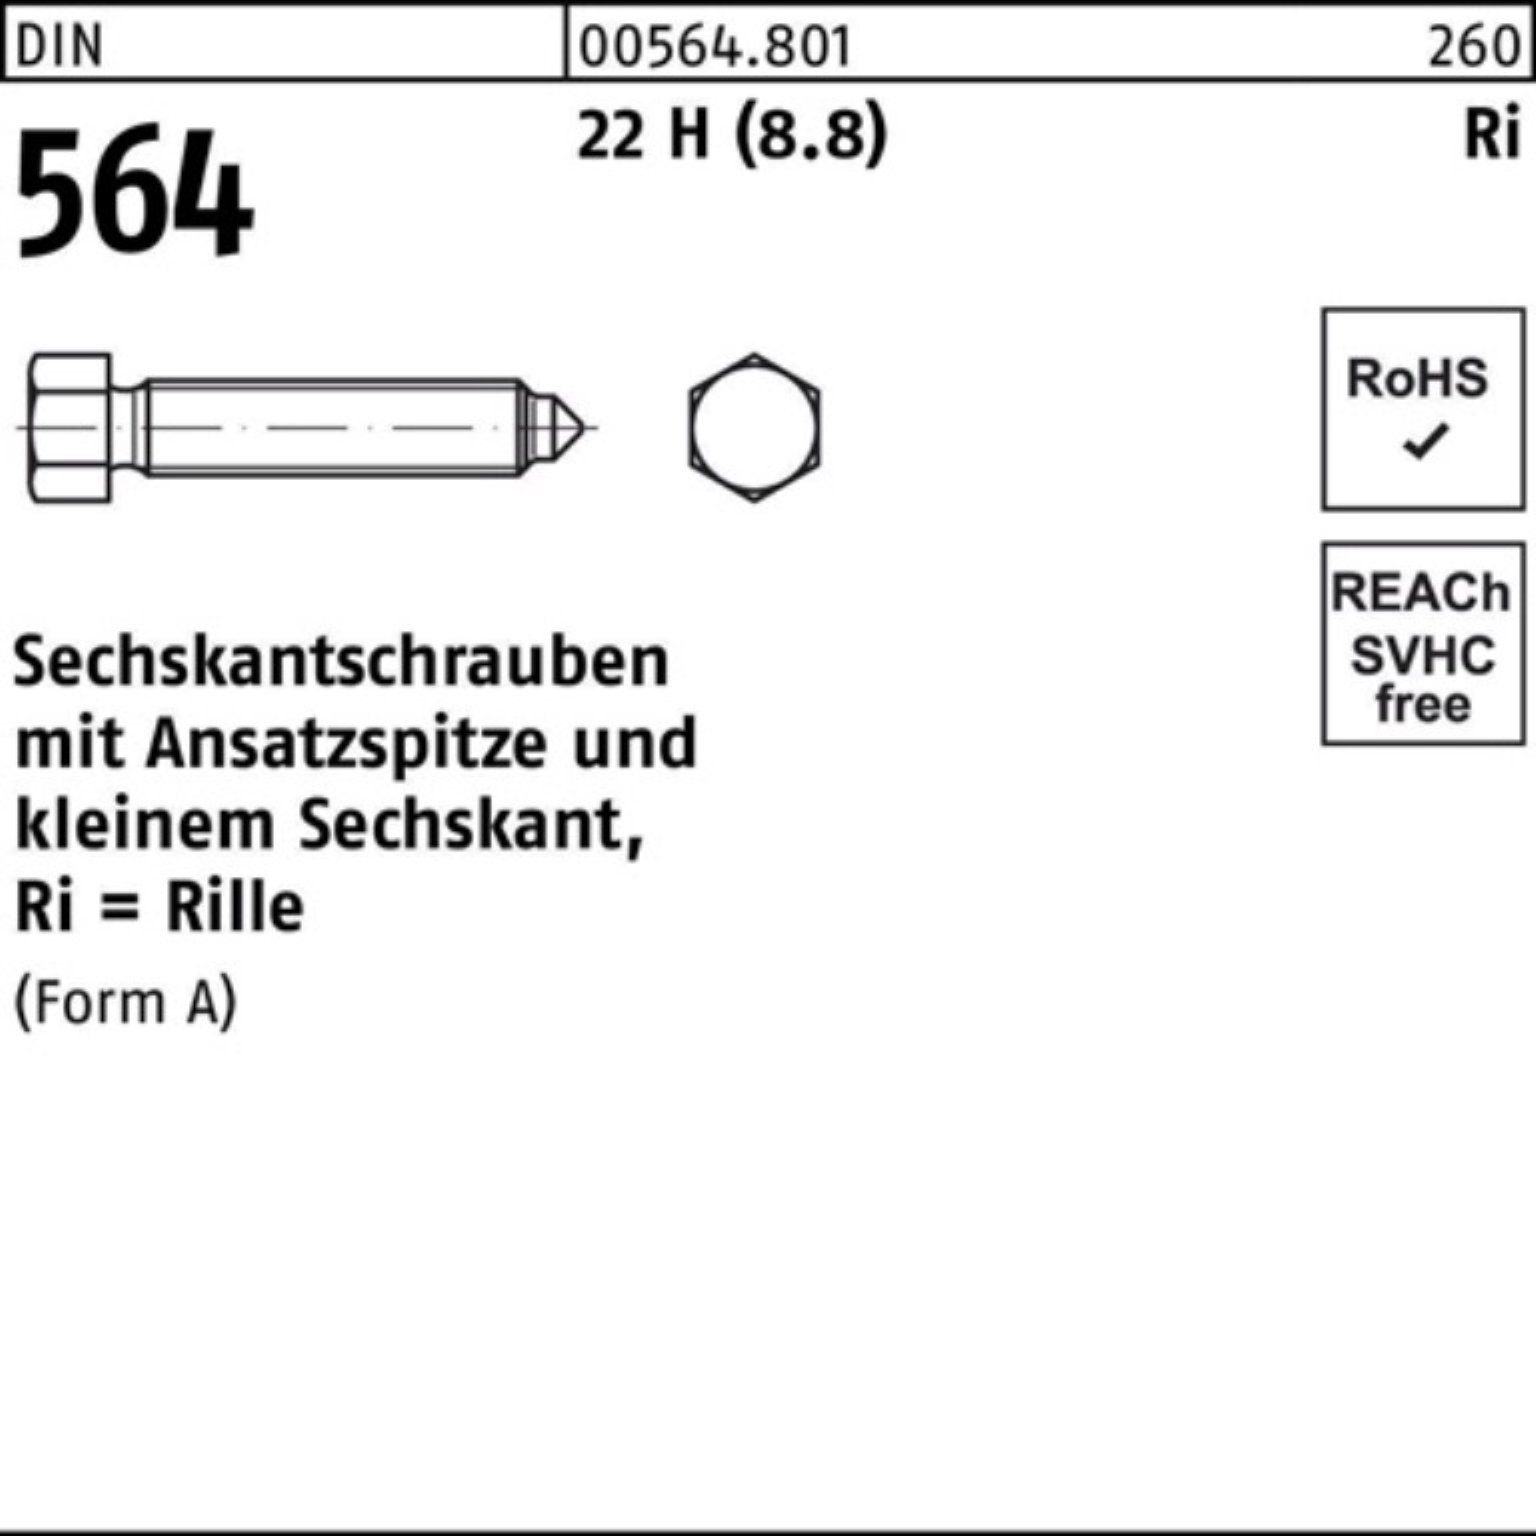 10x H AM Reyher DIN Sechskantschraube Pack Sechskantschraube 564 100er 22 (8.8) 50 Ansatzspitze